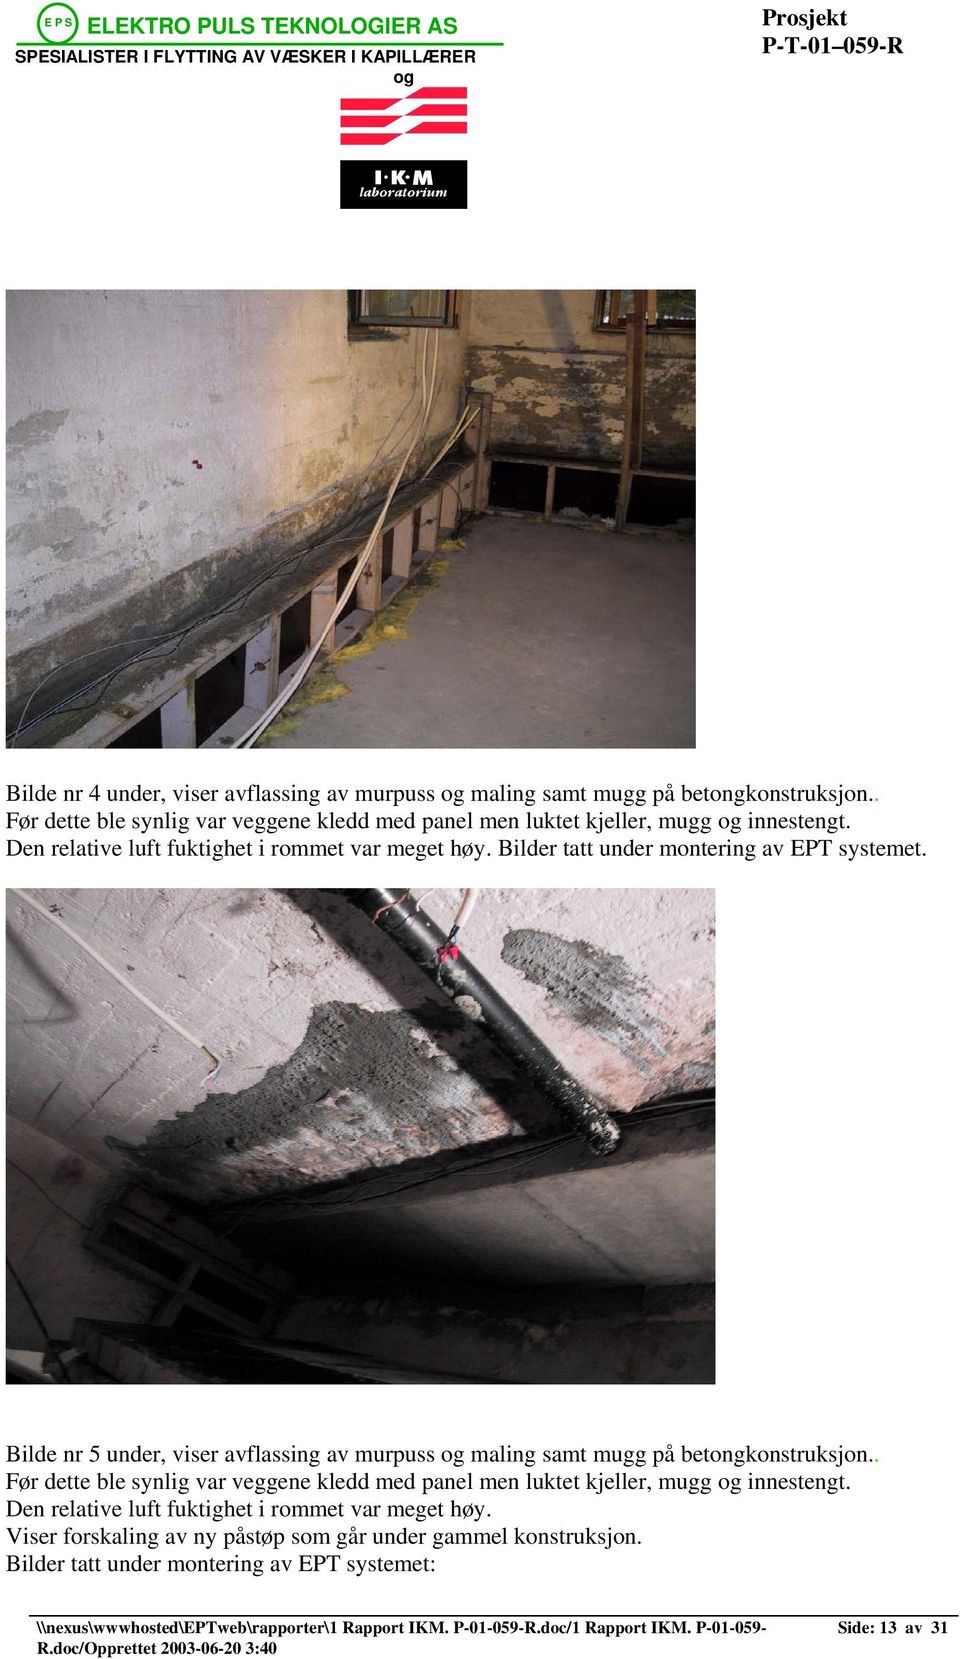 Bilder tatt under montering av EPT systemet. Bilde nr 5 under, viser avflassing av murpuss maling samt mugg på betongkonstruksjon.